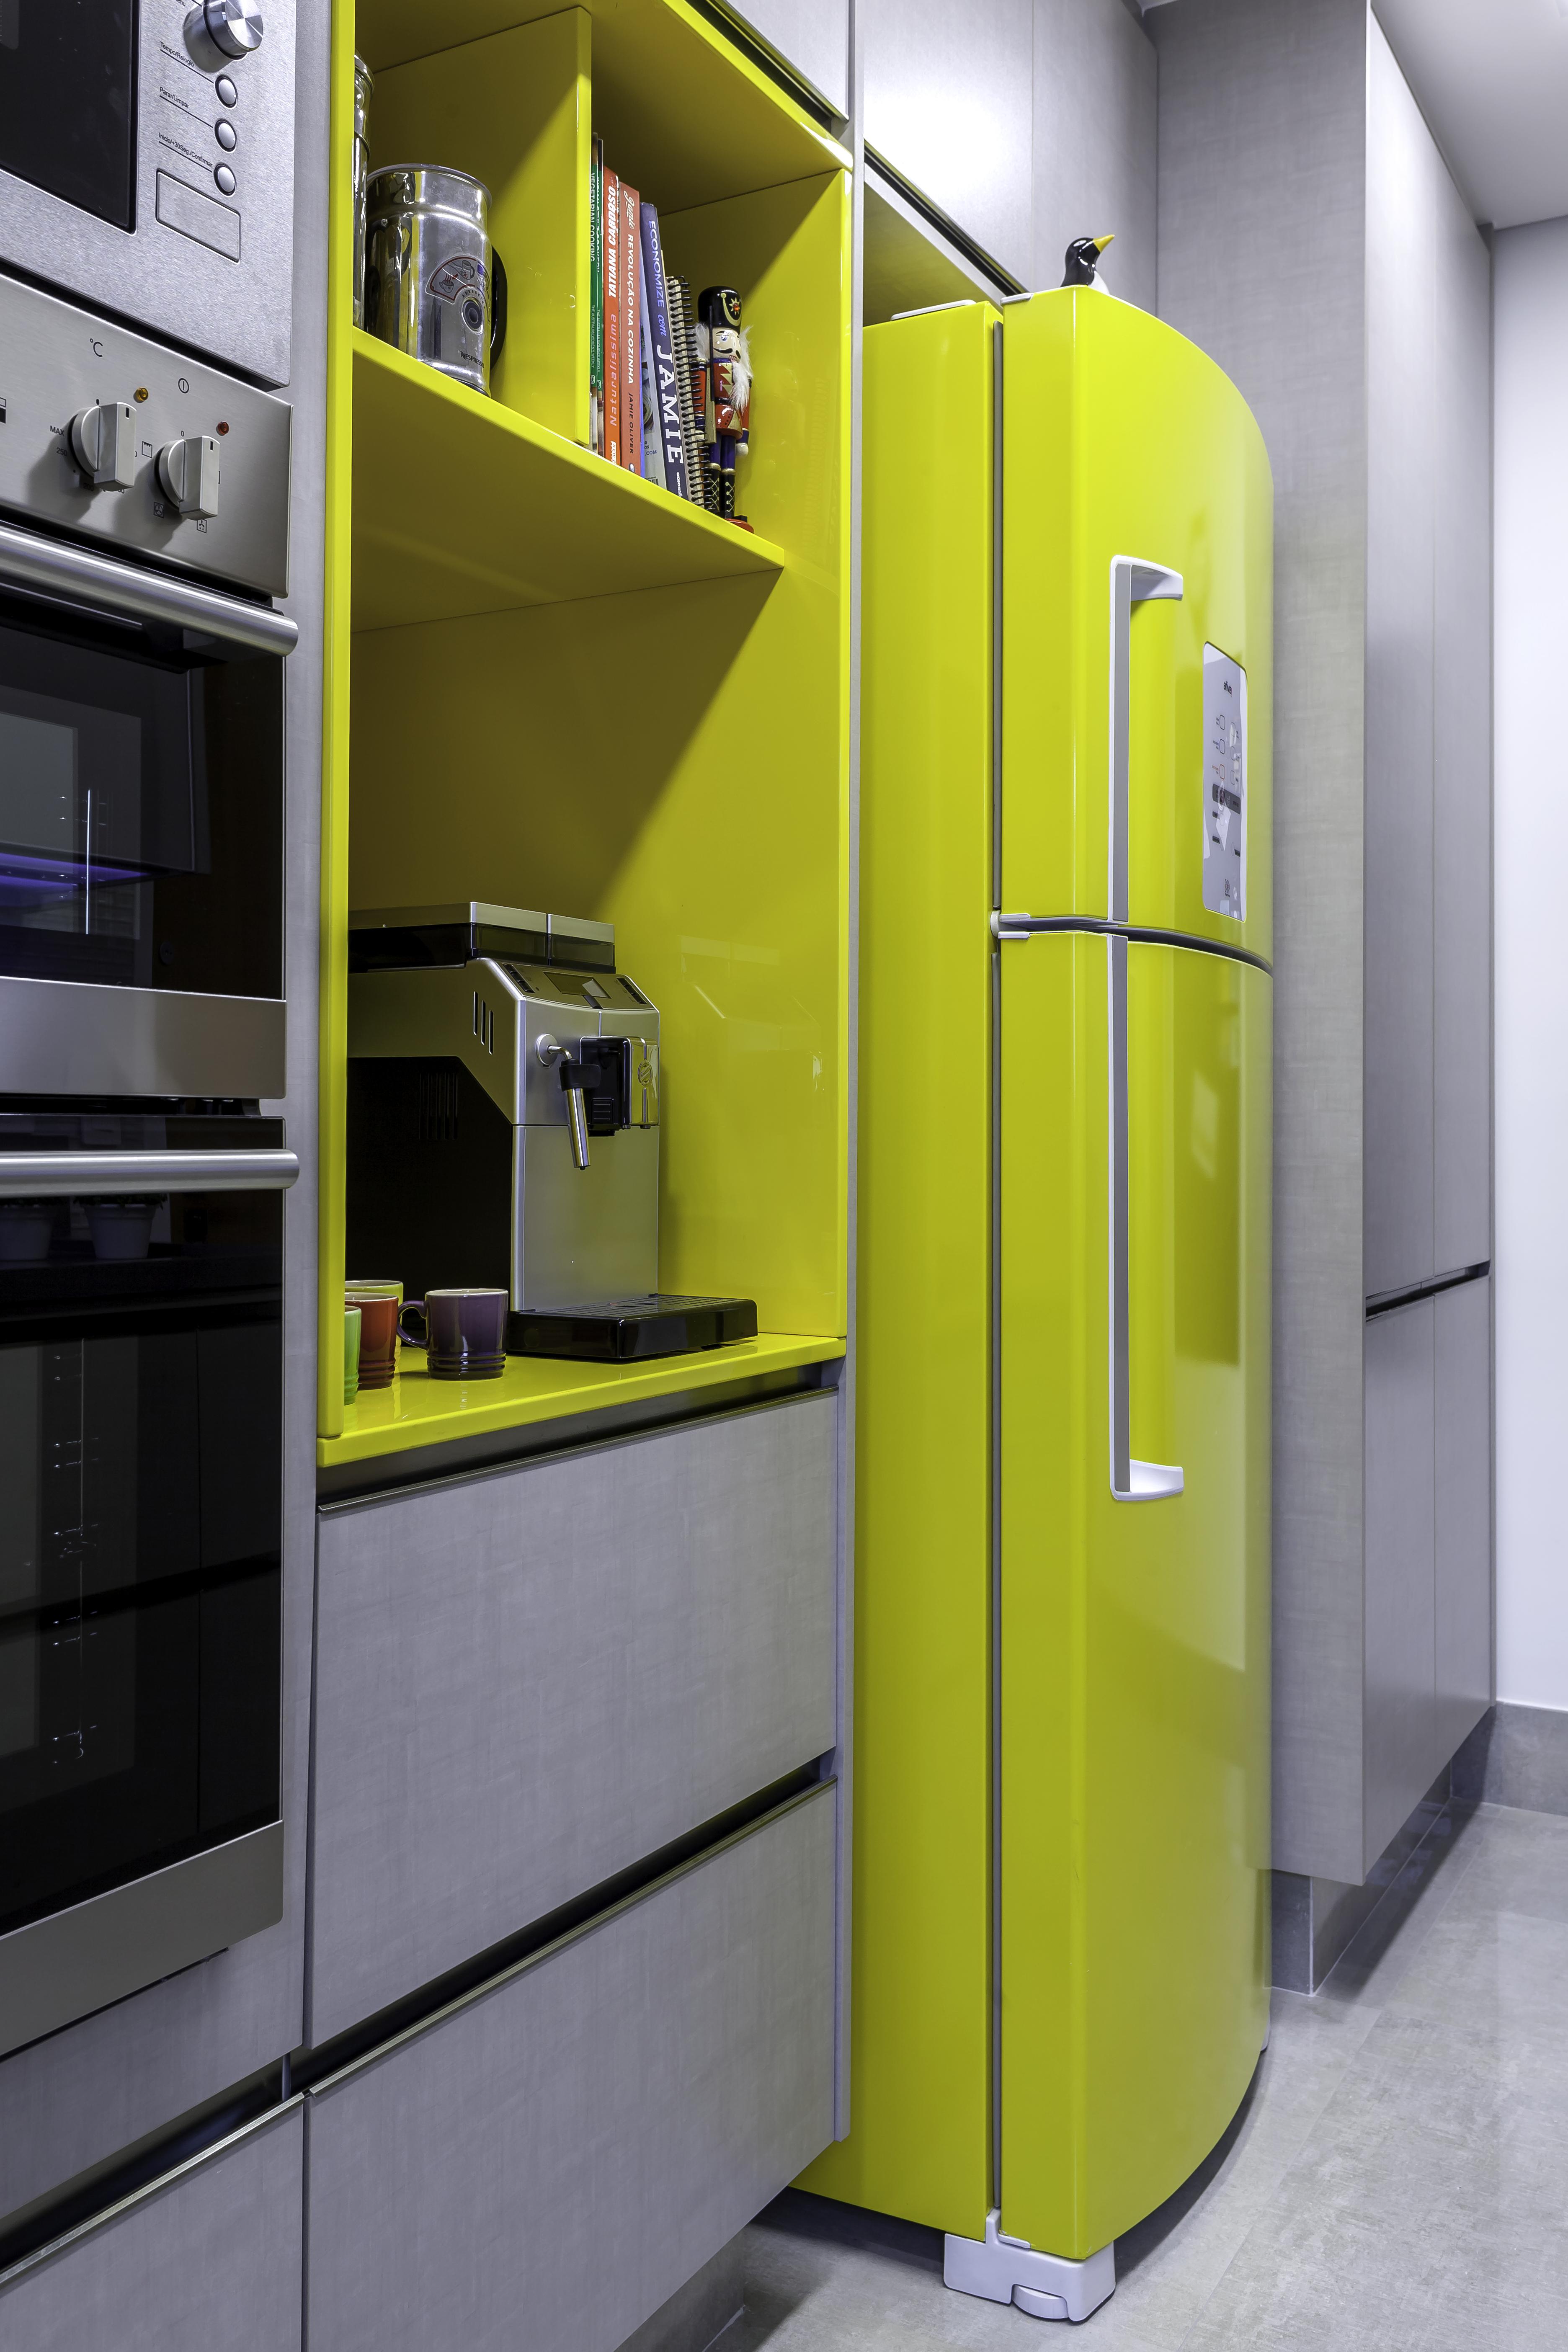 Cozinha com armários e piso cinza, eletrodomésticos de inox e geladeira e nicho do armário amarelos.